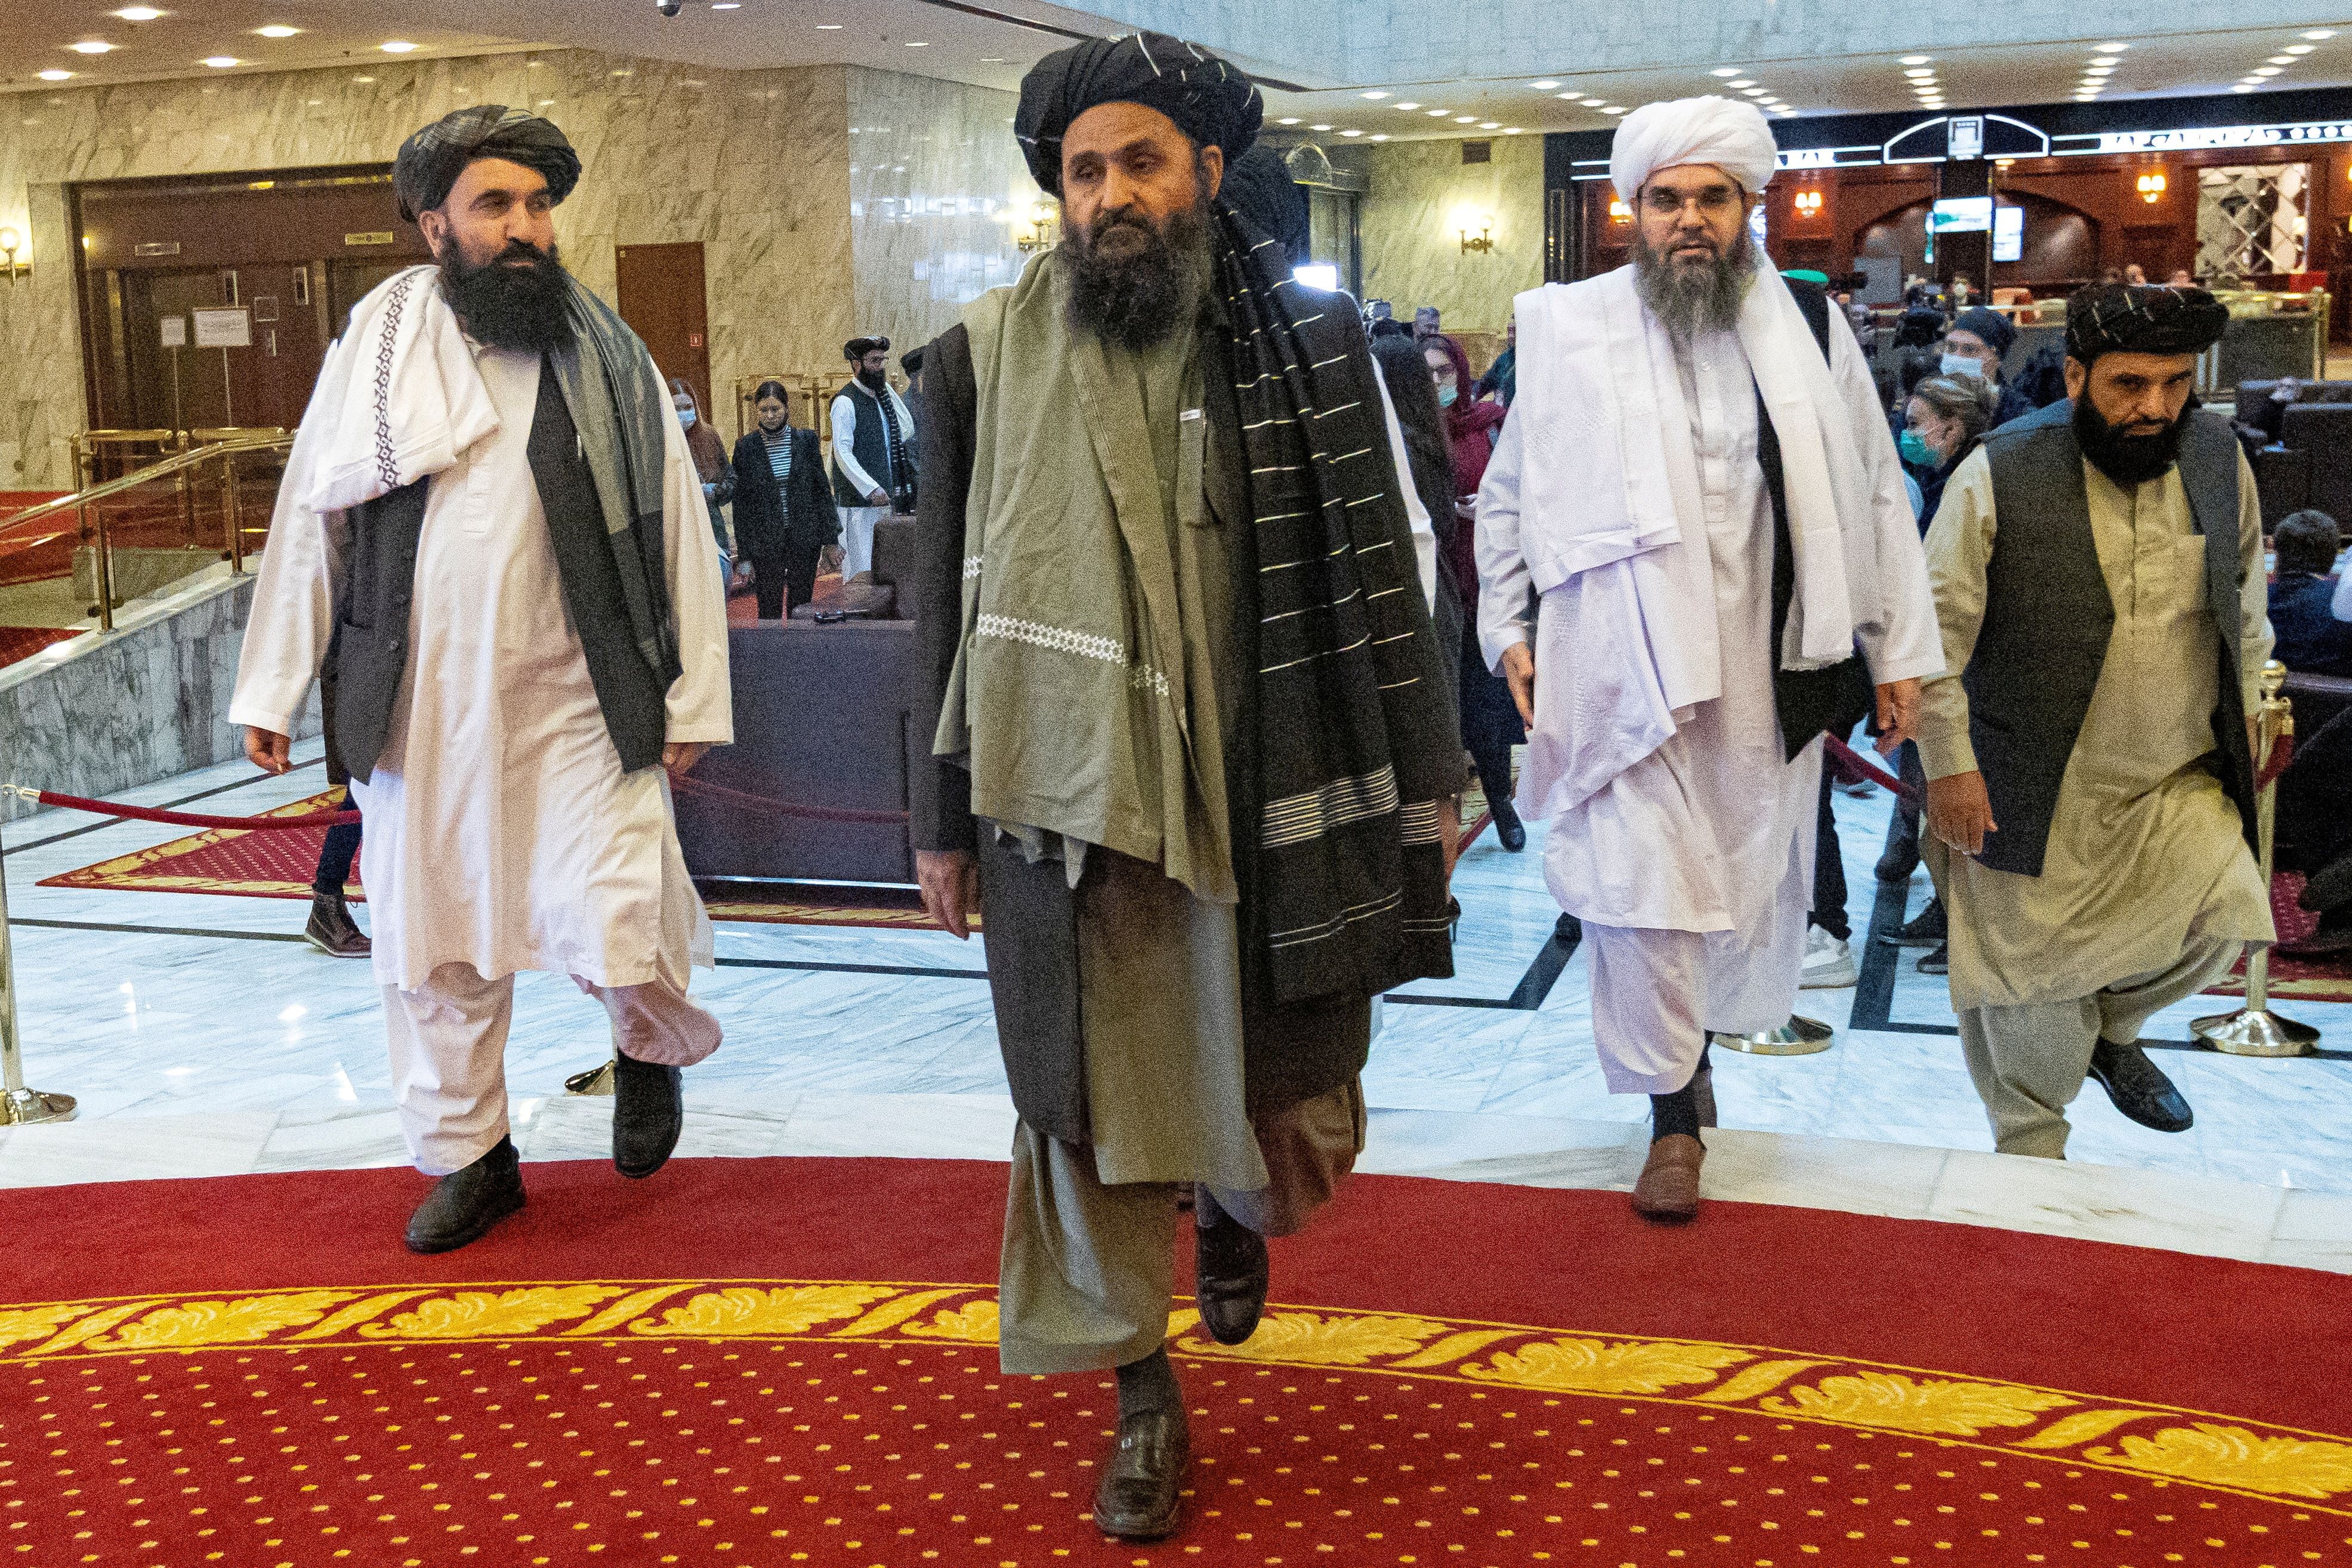 FOTO DE ARCHIVO: El mulá Abdul Ghani Baradar, líder adjunto y negociador de los talibanes, y otros miembros de la delegación asisten a la conferencia de paz afgana en Moscú, Rusia, 18 de marzo de 2021. Alexander Zemlianichenko/Pool vía REUTERS